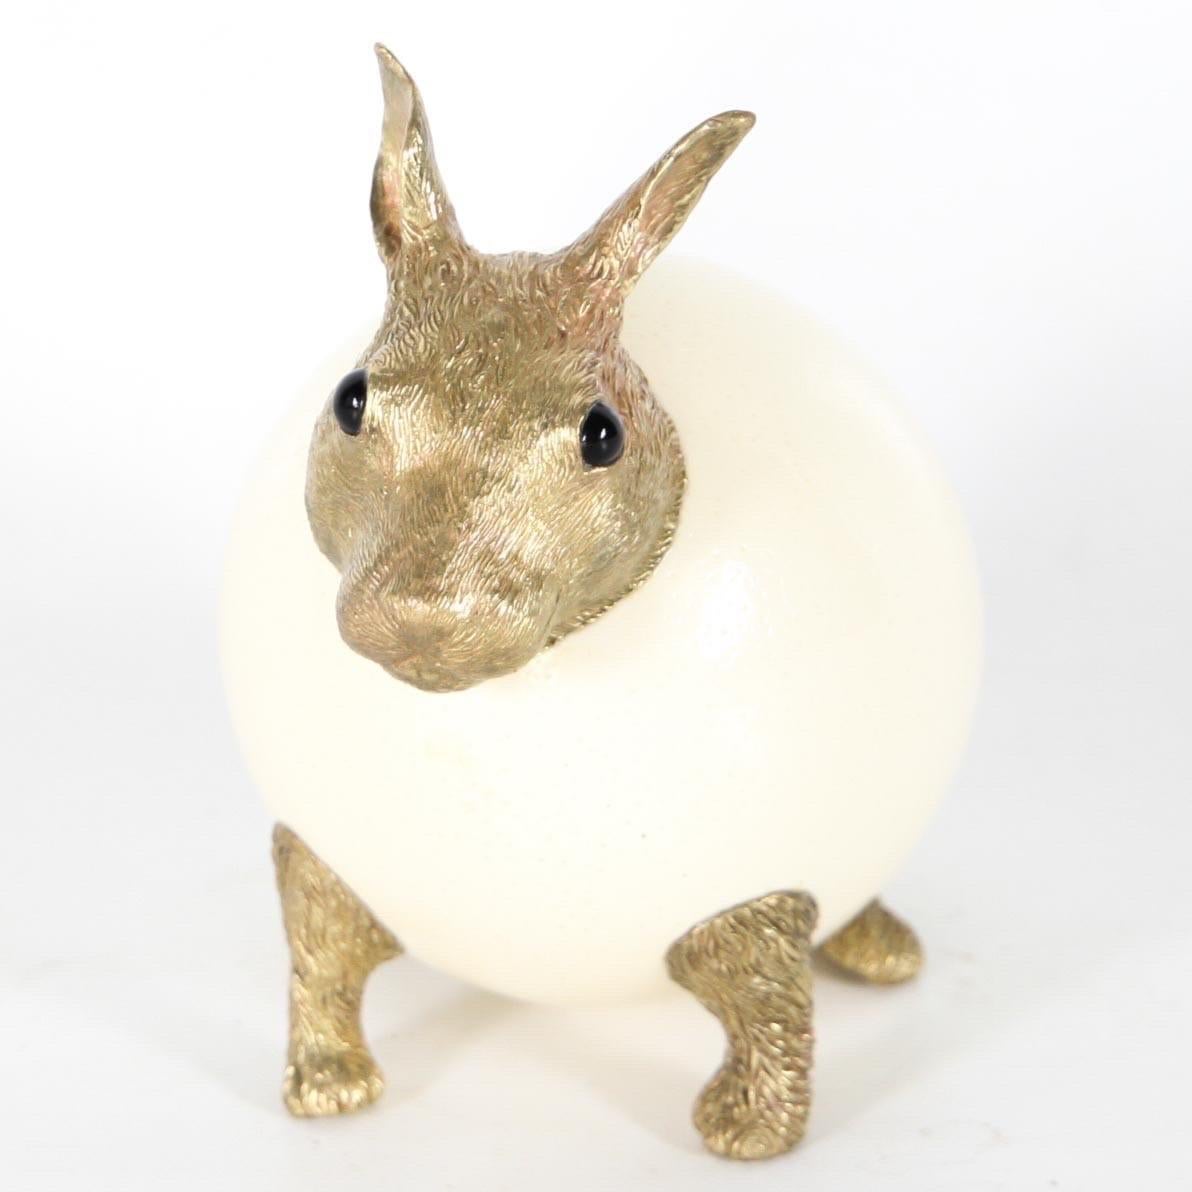 Sculpture contemporaine représentant un lapin en bronze doré finement ciselé et en œuf d'autruche. Des yeux en pierre dure.
Travail de haute qualité, indispensable !